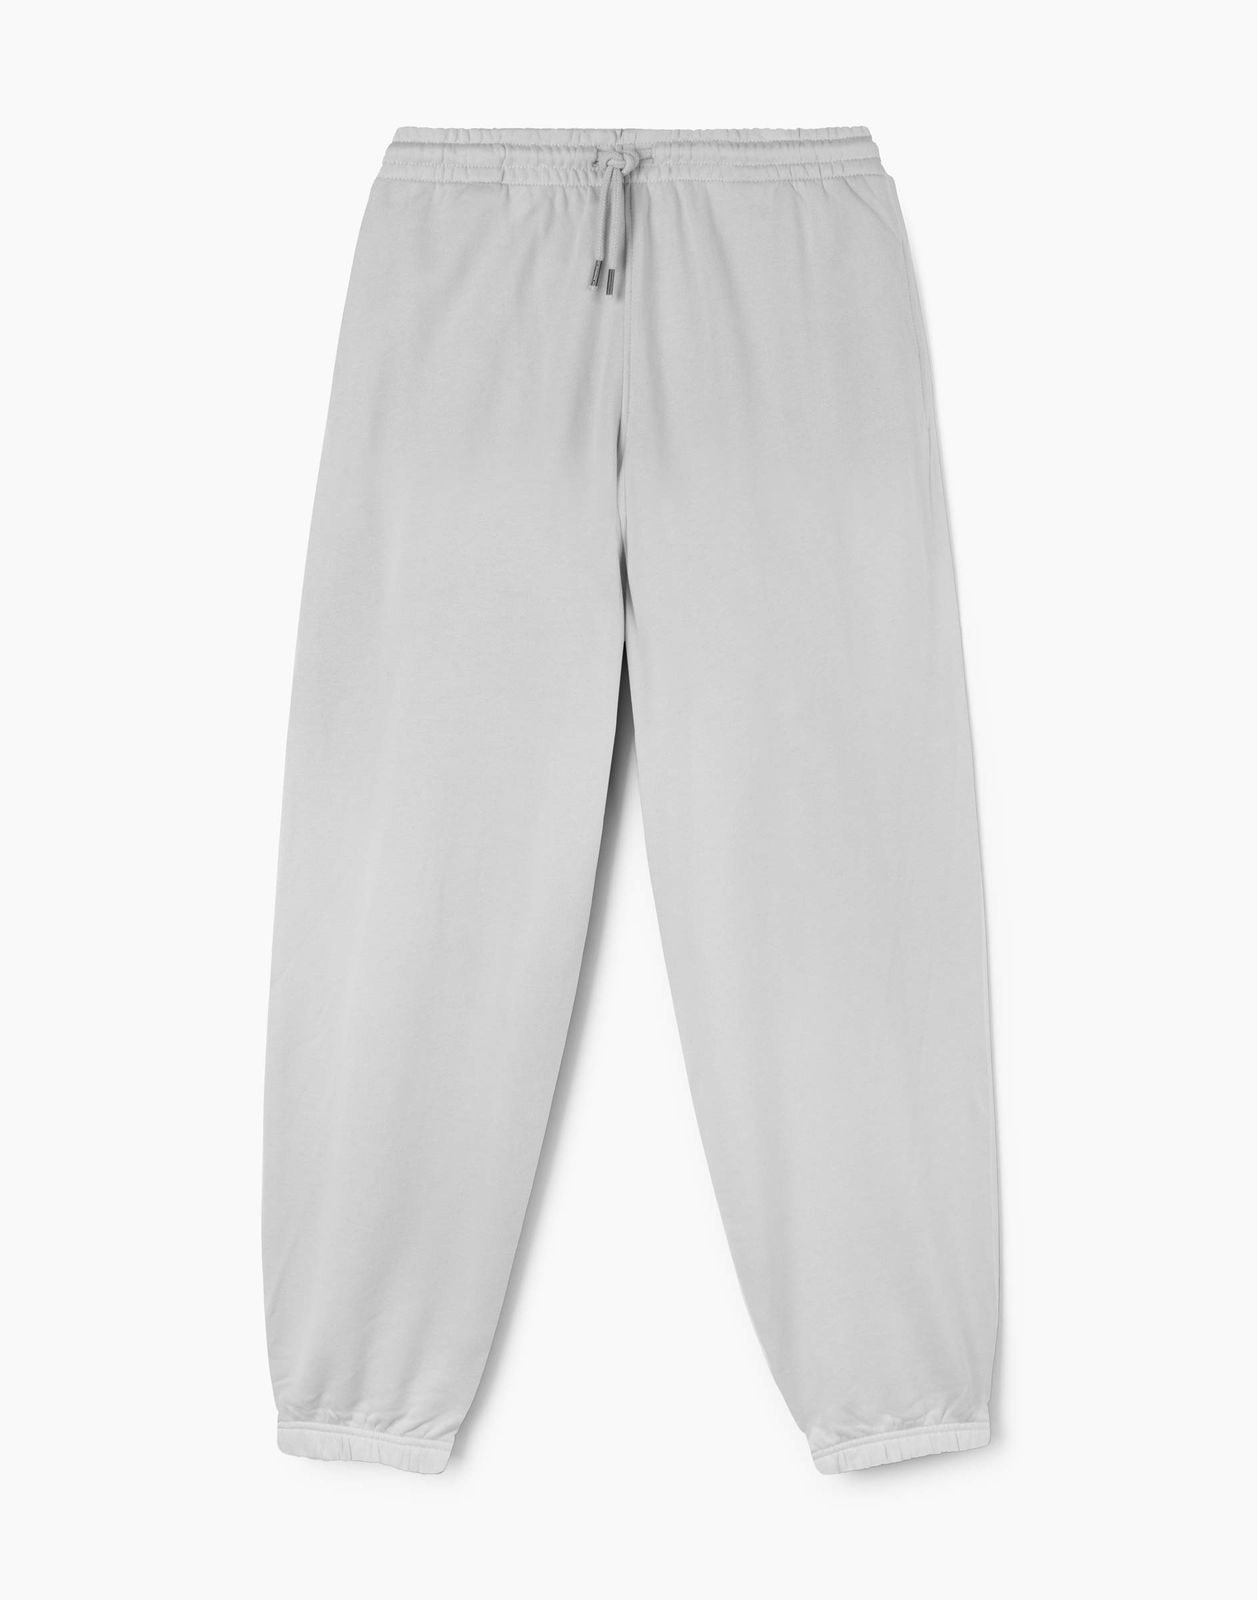 Спортивные брюки мужские Gloria Jeans BAC013026 светло-серый XL/182